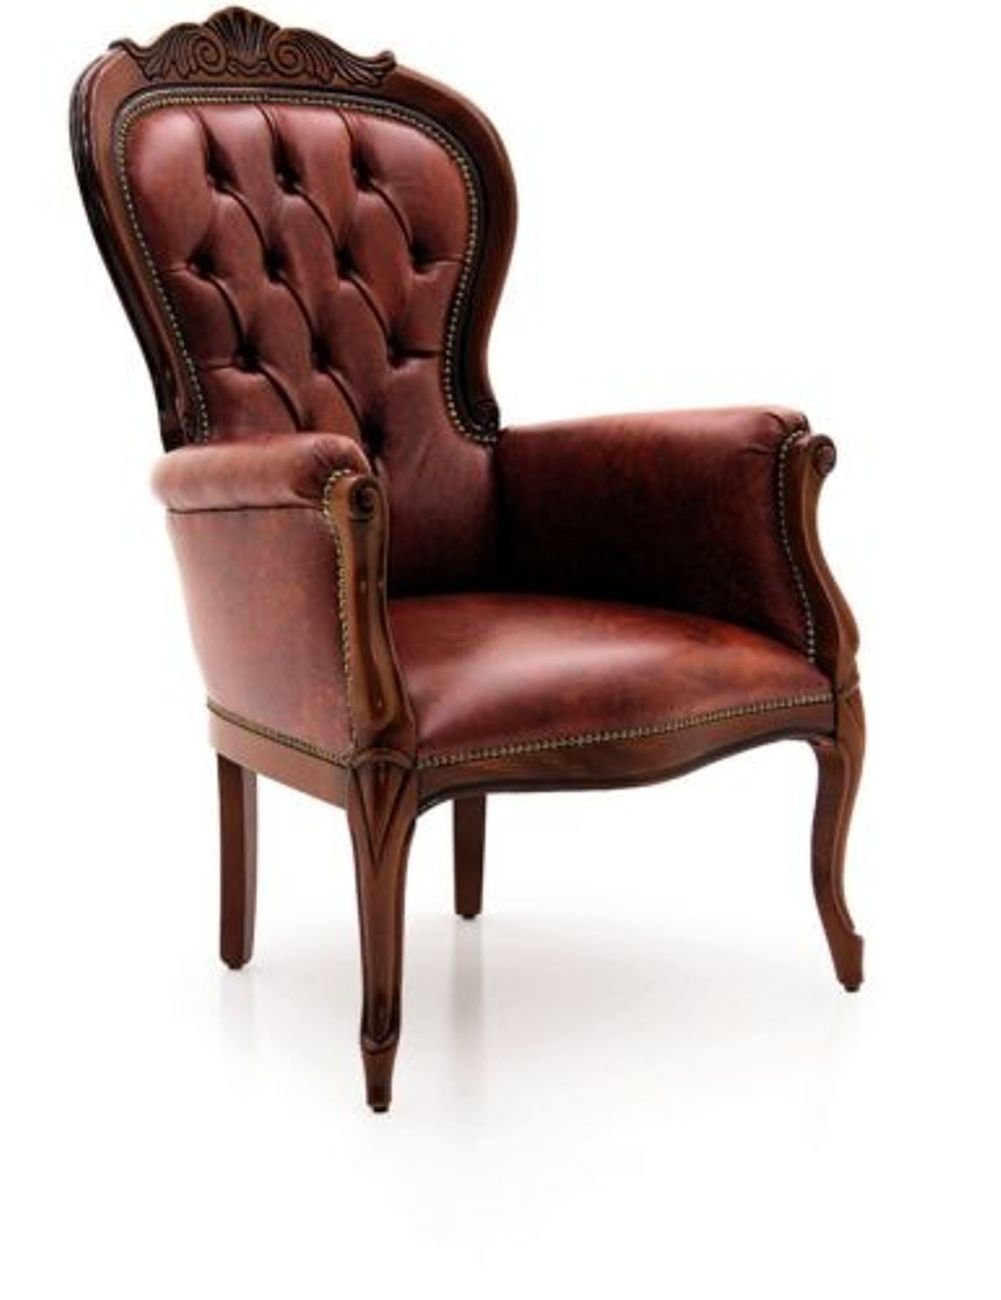 JVmoebel Sessel Designer Lounge Stuhl Club Relax Stoff Leder Polster Einsitzer Chesterfield-Sessel,